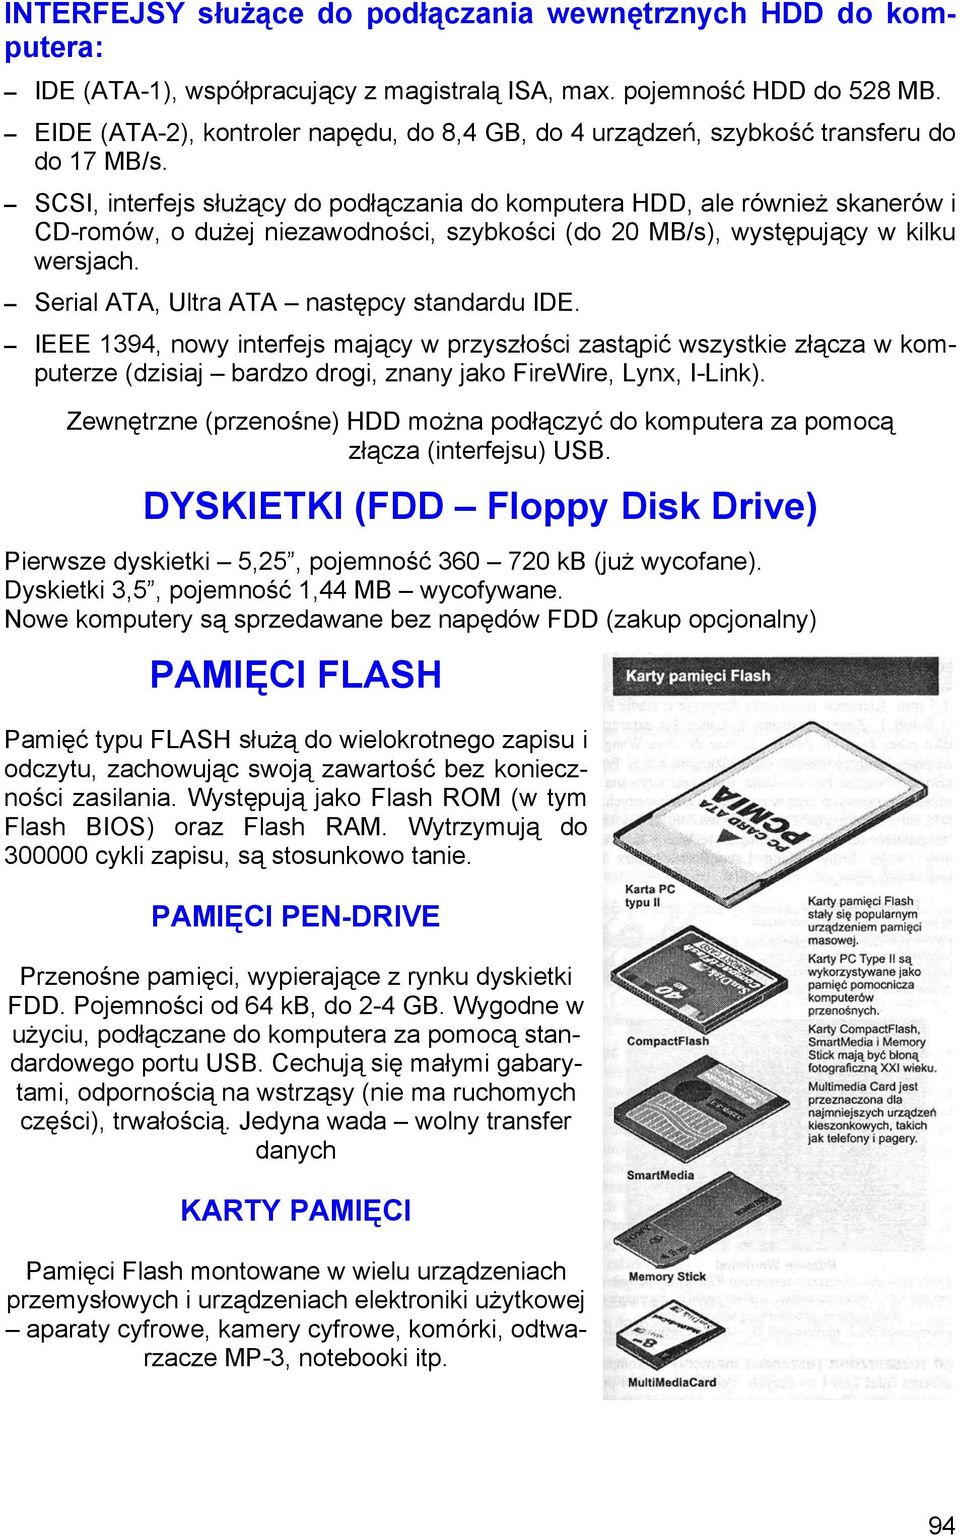 SCSI, interfejs służący do podłączania do komputera HDD, ale również skanerów i CD-romów, o dużej niezawodności, szybkości (do 20 MB/s), występujący w kilku wersjach.